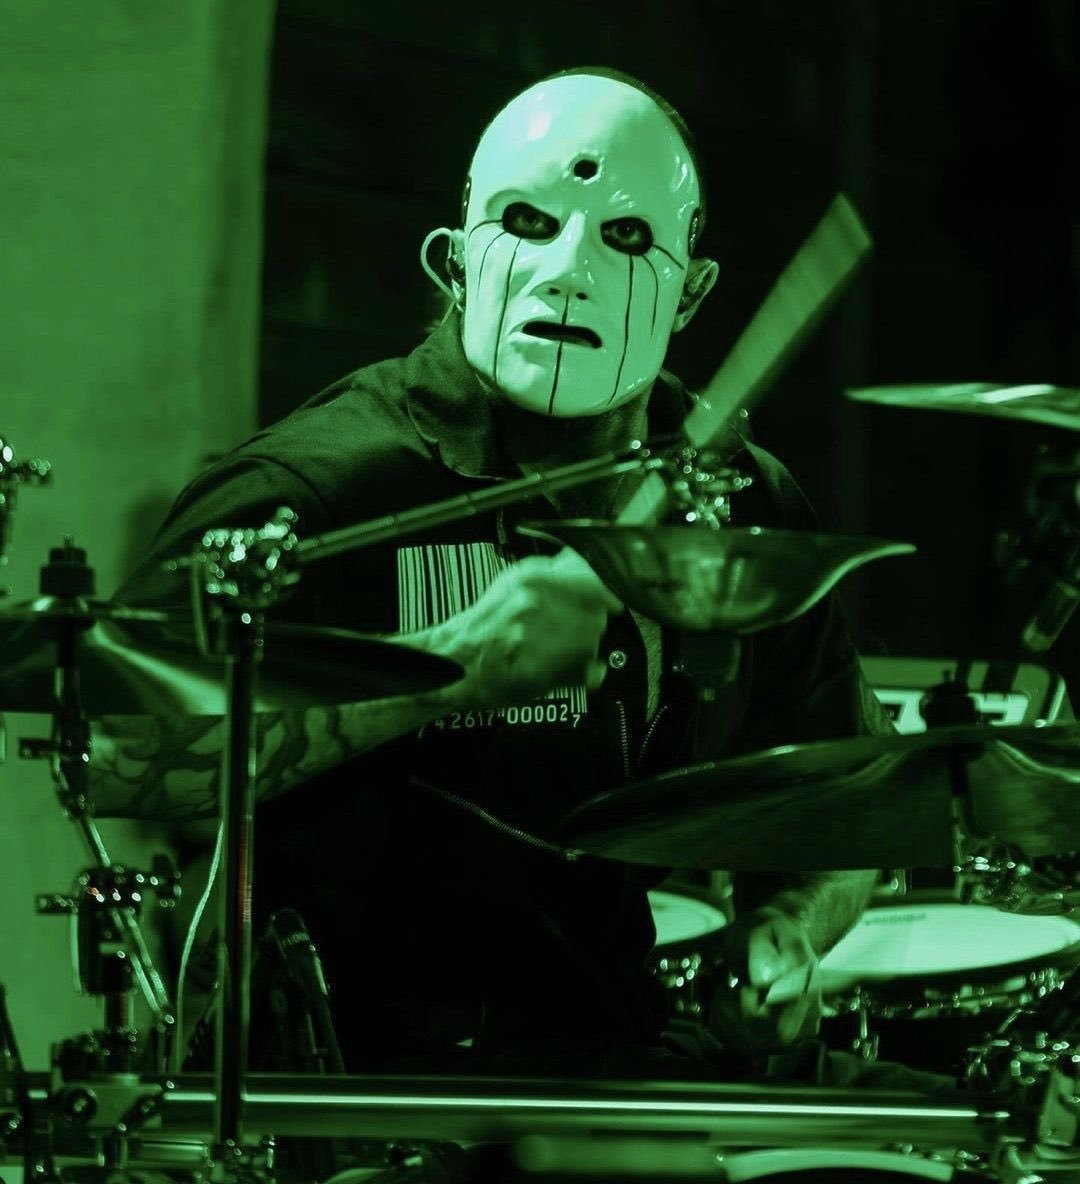 Jim Root, guitarrista do Slipknot, disse que precisa entrar 'em modo de composição' para escrever 'músicas dignas da bateria de Eloy Casagrande'.

Root ainda descreveu o brasileiro como um 'baterista de nível mundial' e falou que o Slipknot nem testou outros músicos para a vaga.